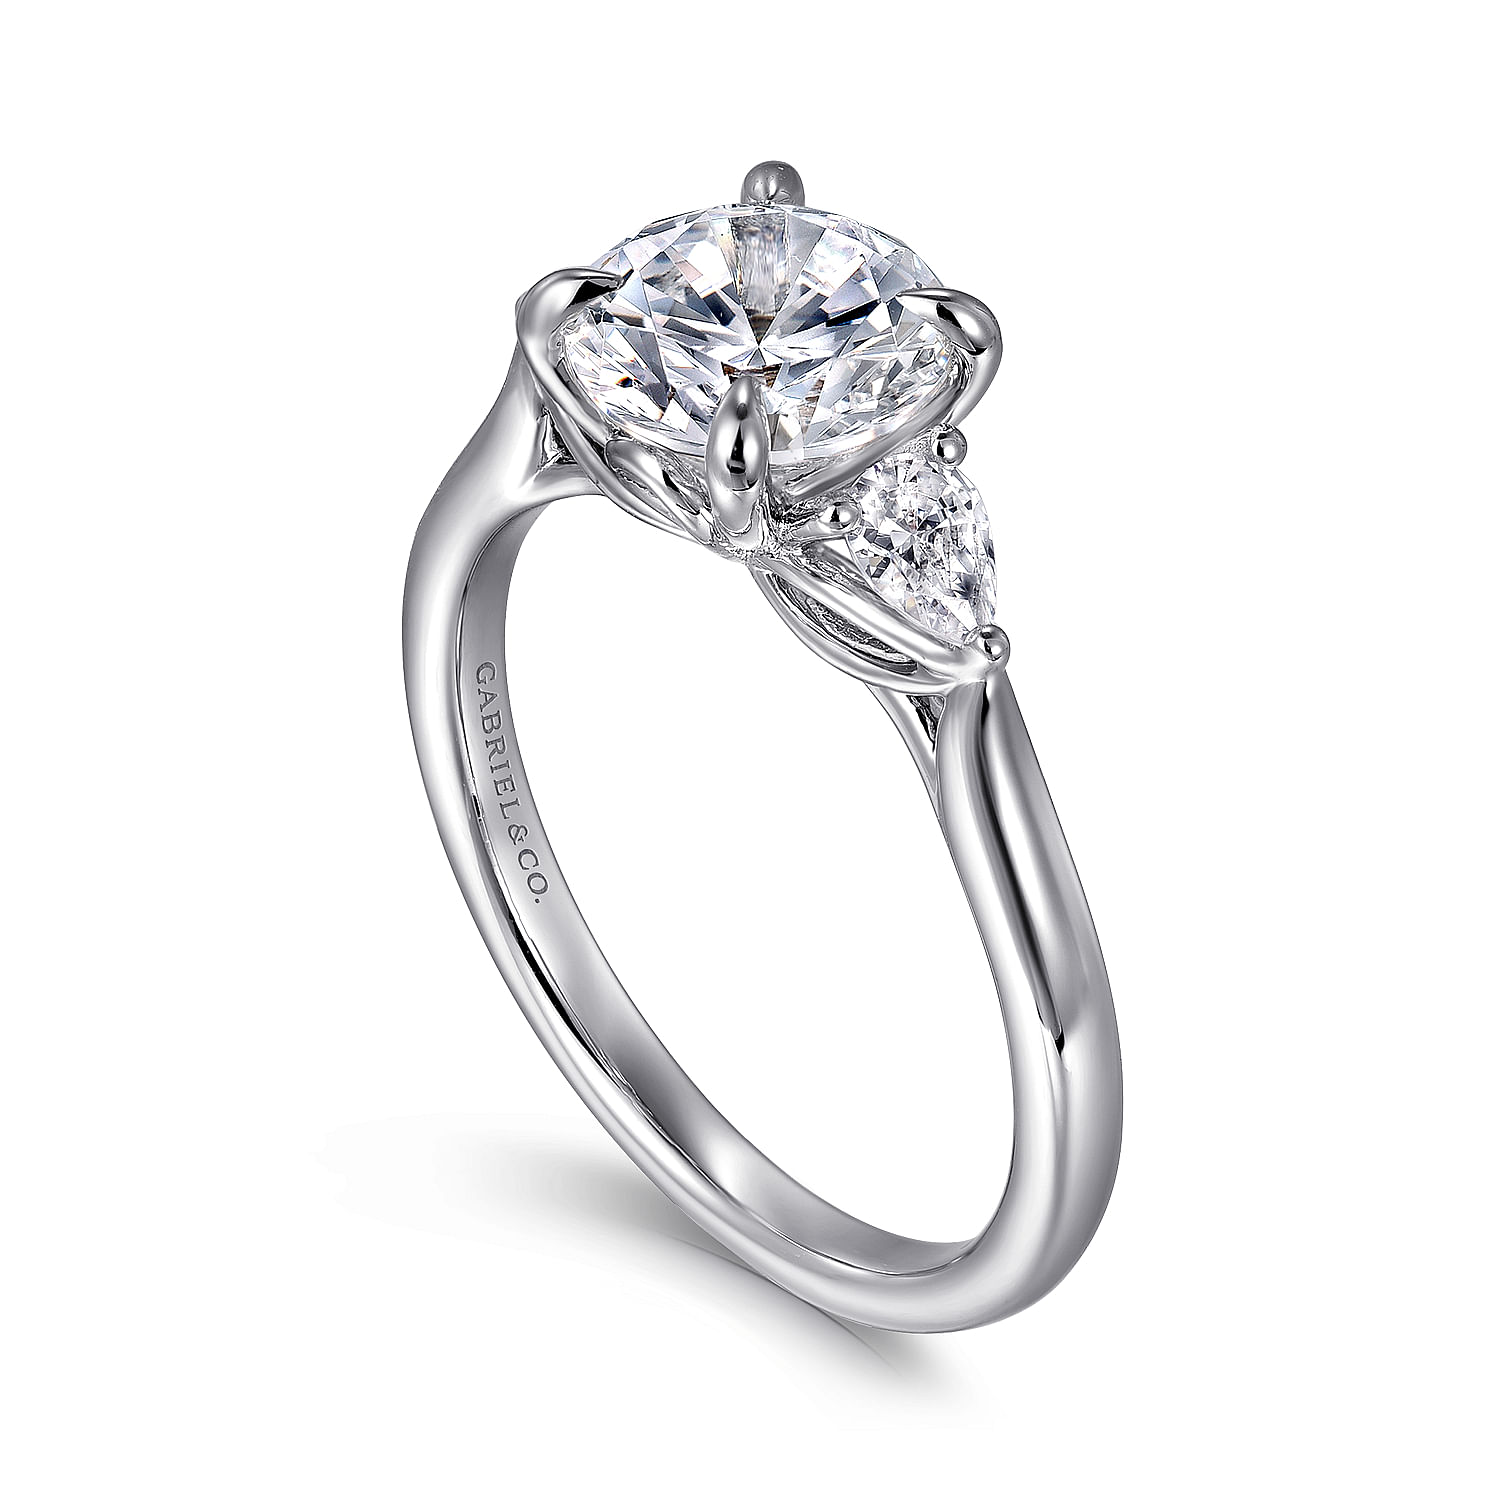 14K White Gold Three Stone Round Diamond Engagement Ring